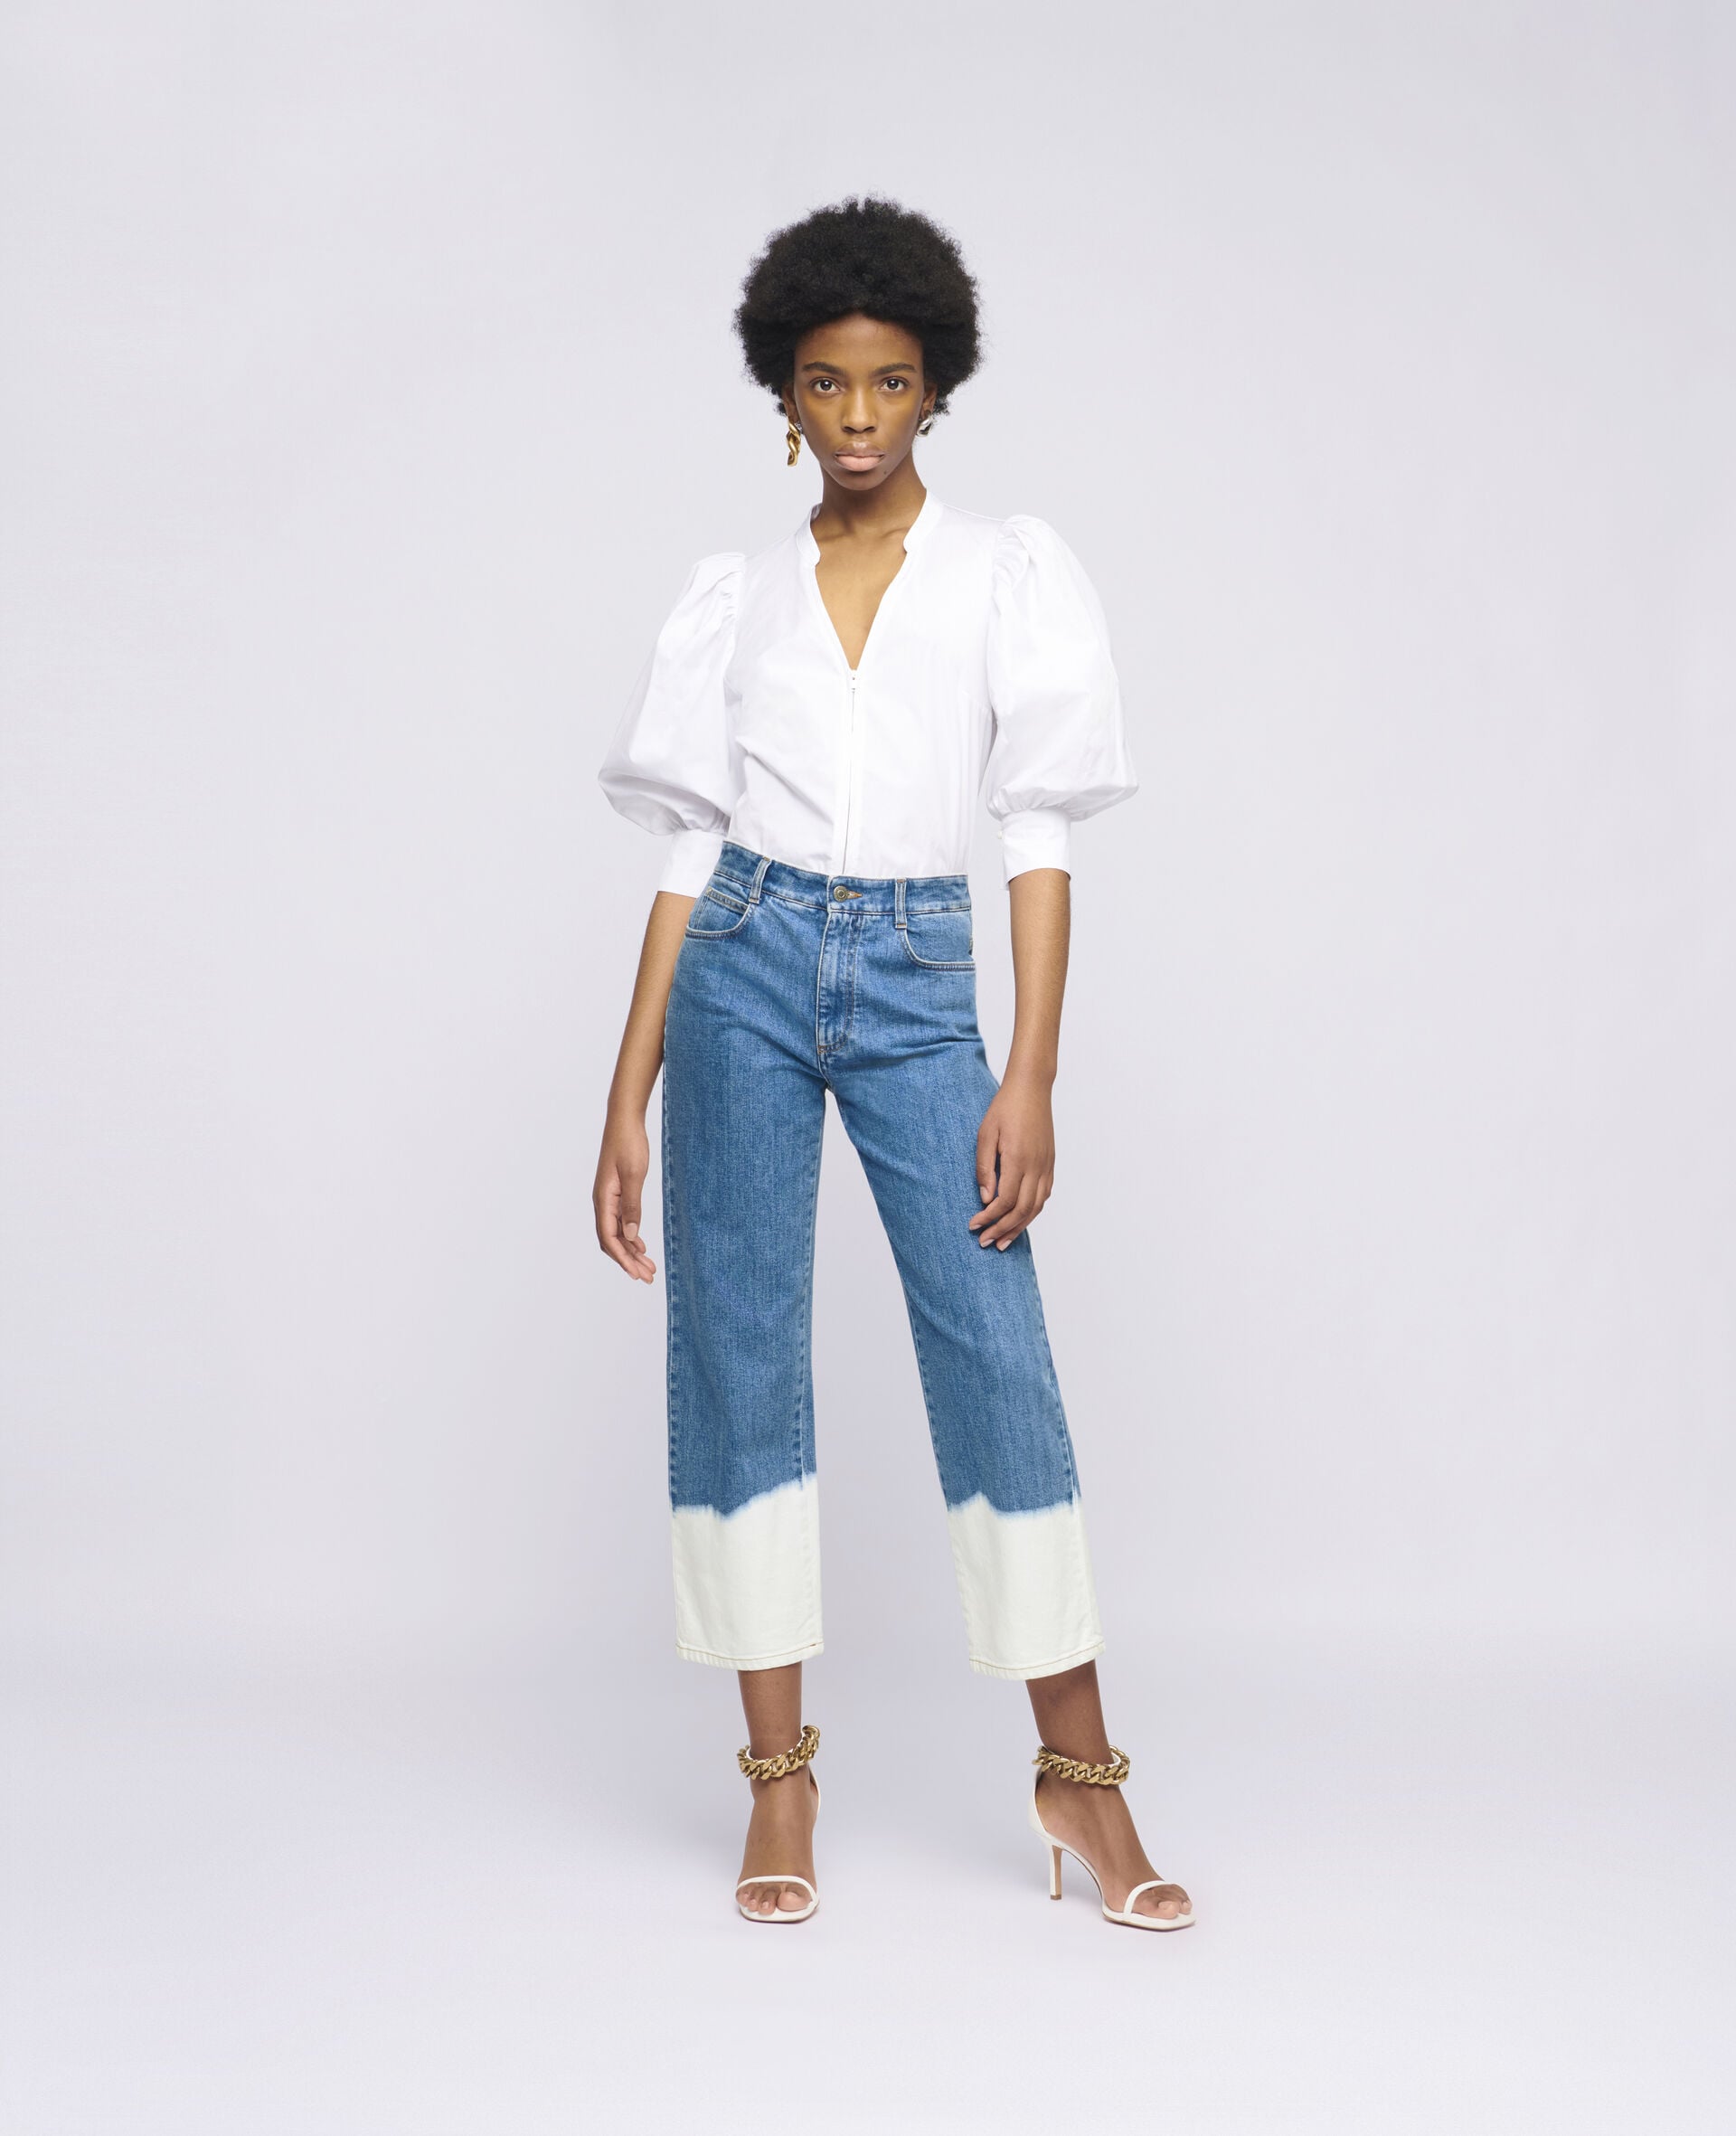 Designer jeans 'not worth hefty price' as cheaper denim brands top Which?  survey - Mirror Online